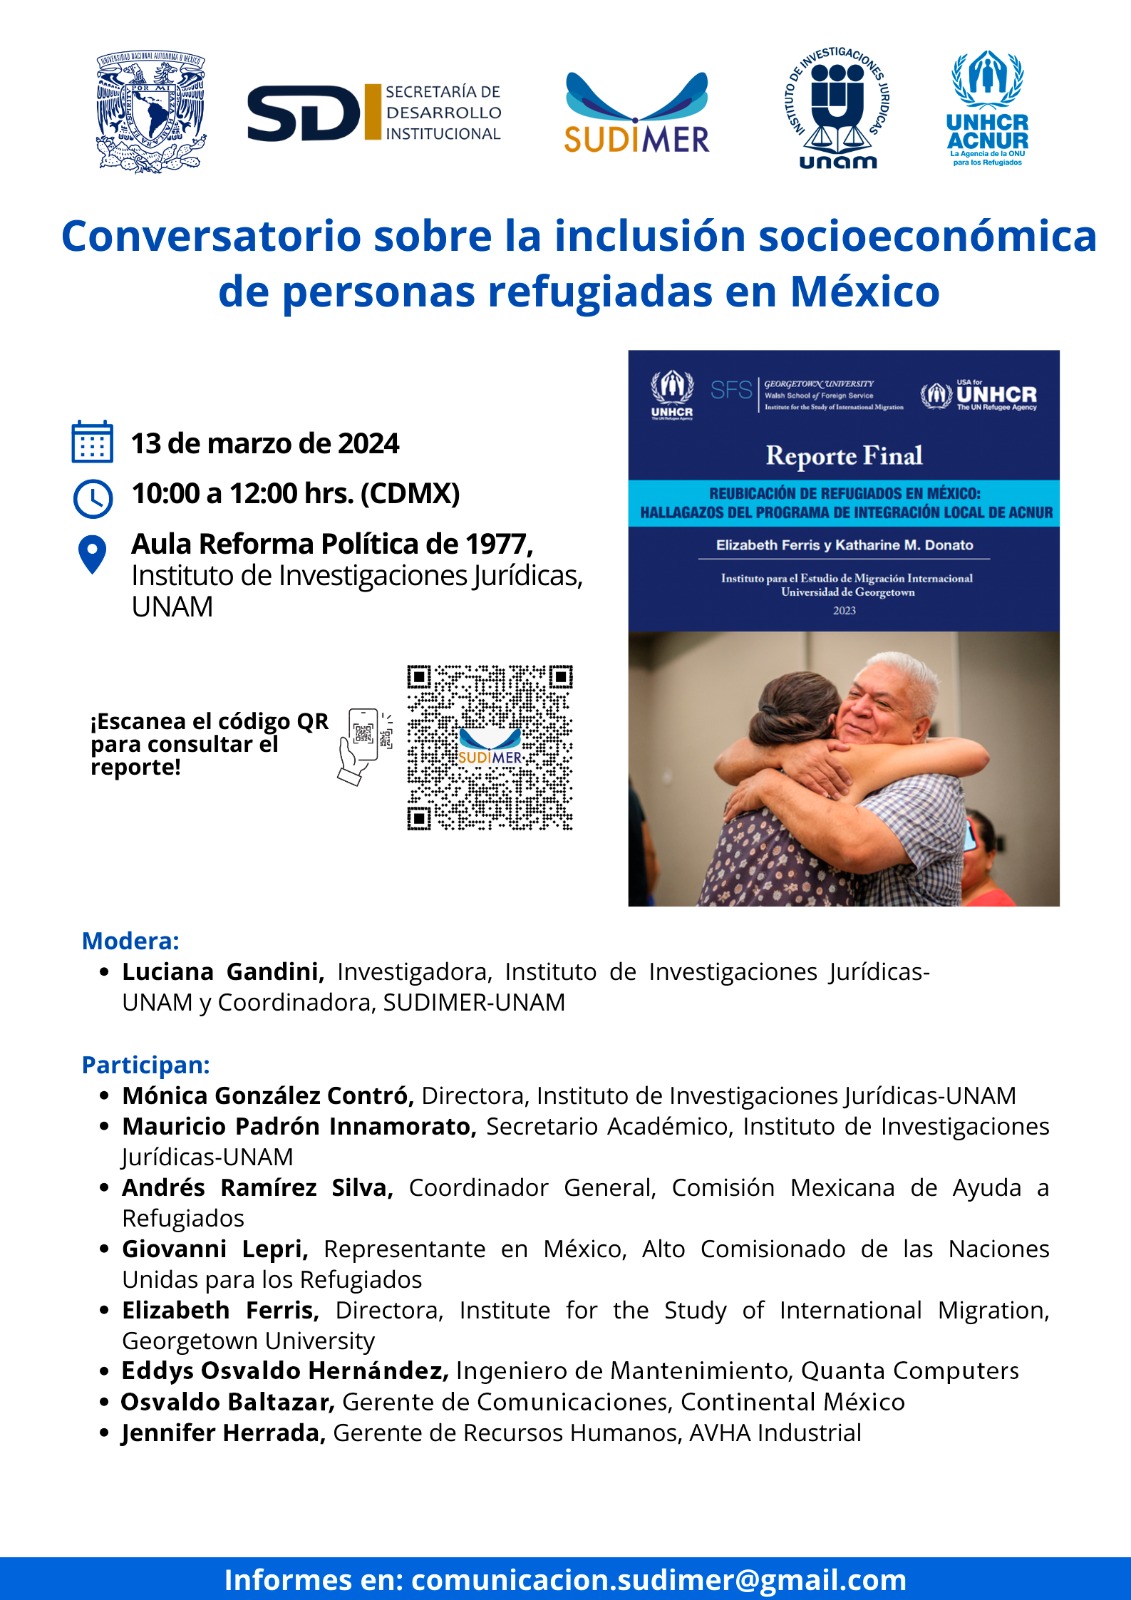 Conversatorio sobre la inclusión socioeconómica de personas refugiadas en México